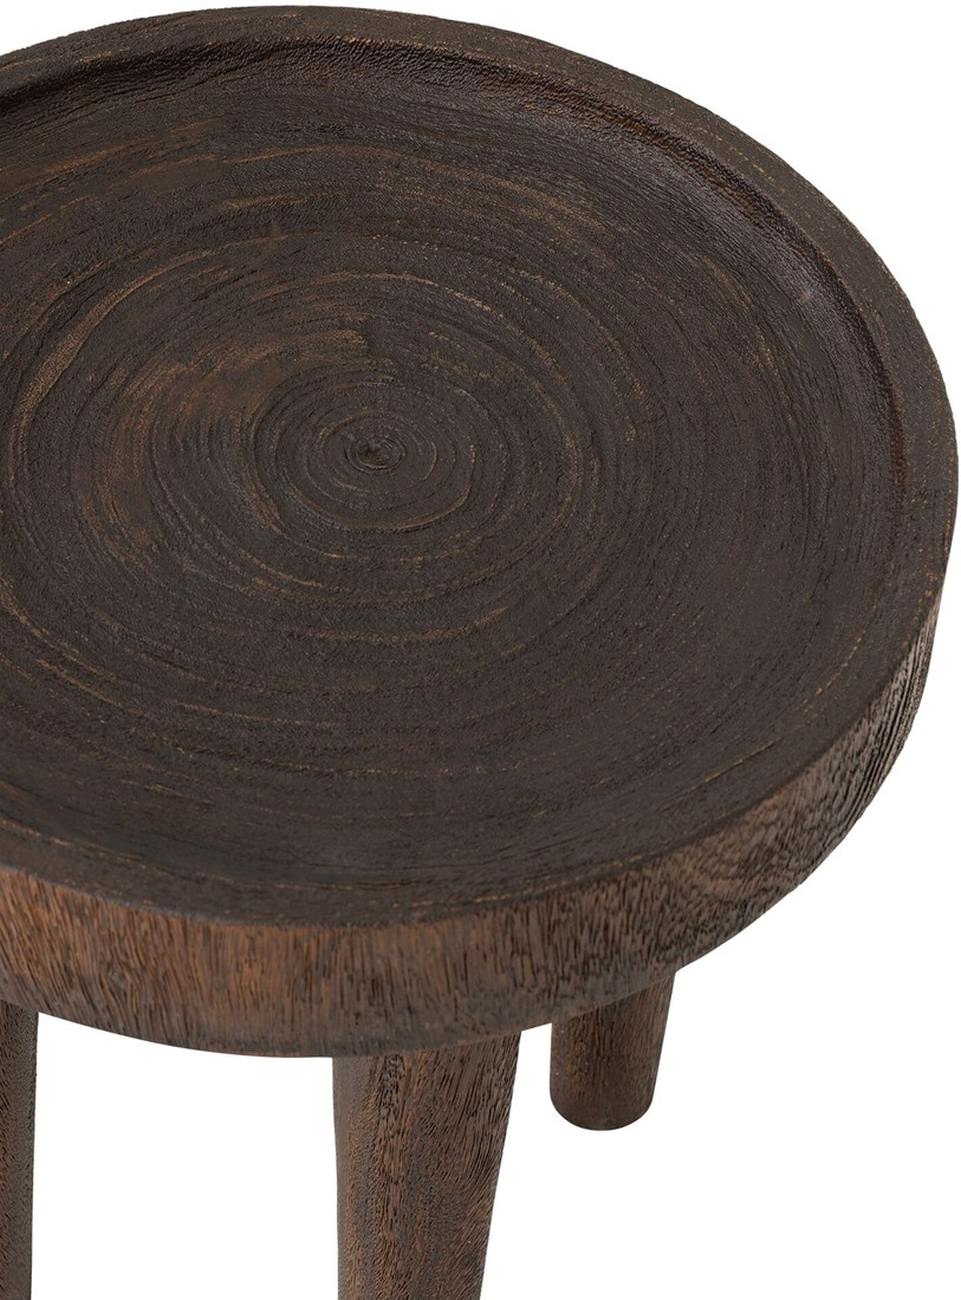 Der Beistelltisch Tray überzeugt mit seinem modernen Stil. Gefertigt wurde er aus Suarholz, welches einen braunen Farbton besitzt. Der Tisch besitzt einen Durchmesser von 45 cm